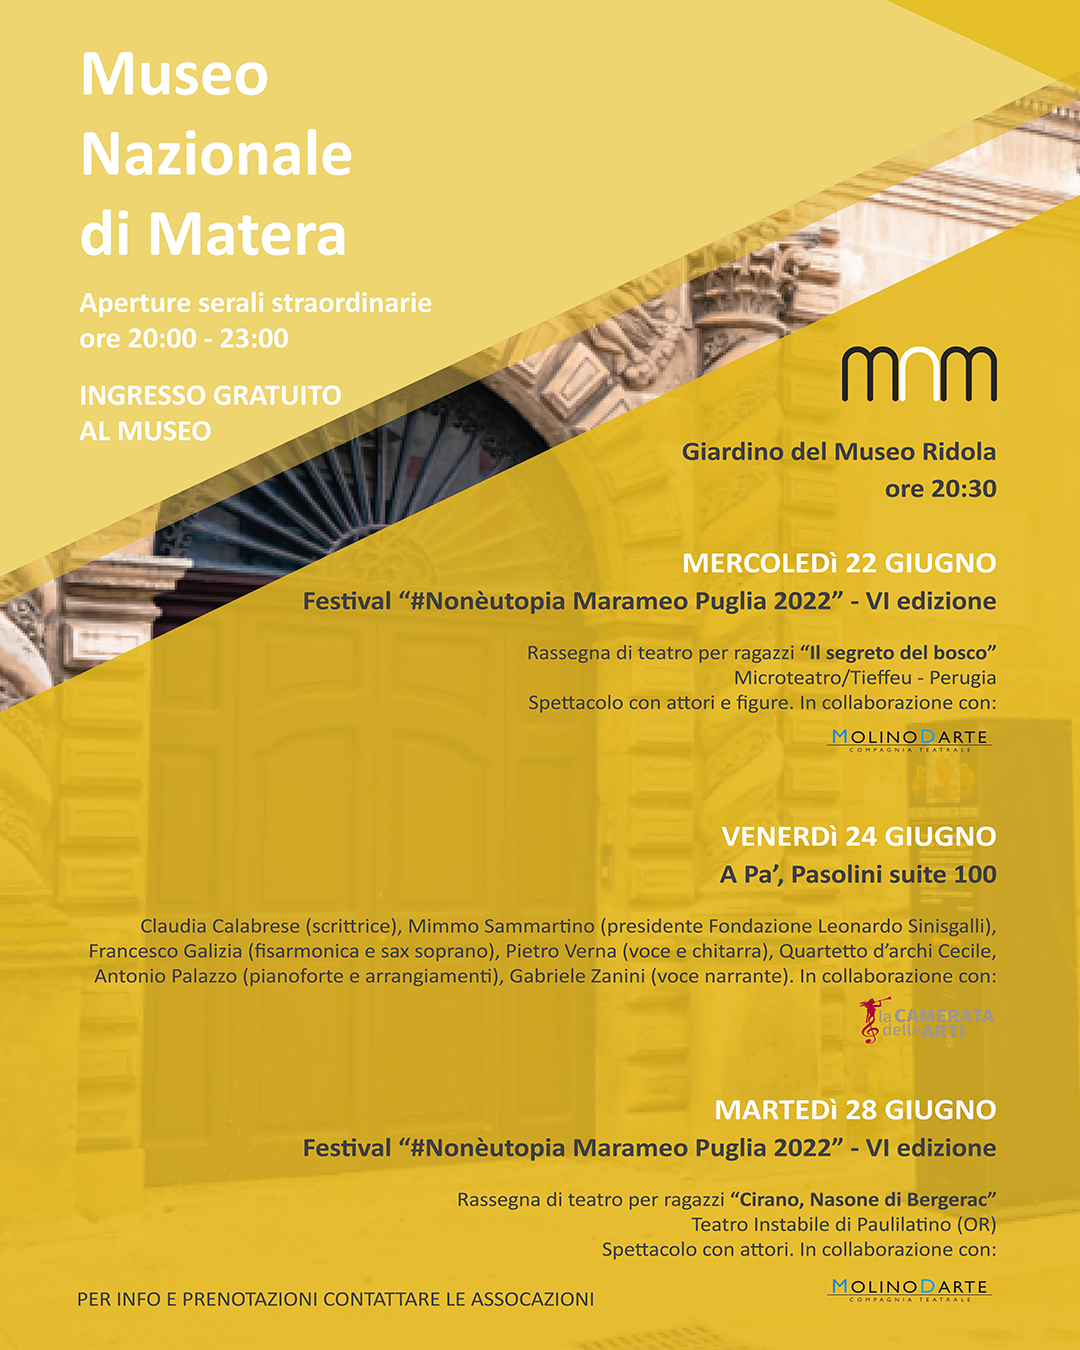 Aperture Serali Straordinarie, giugno 2022 - Museo Nazionale di Matera